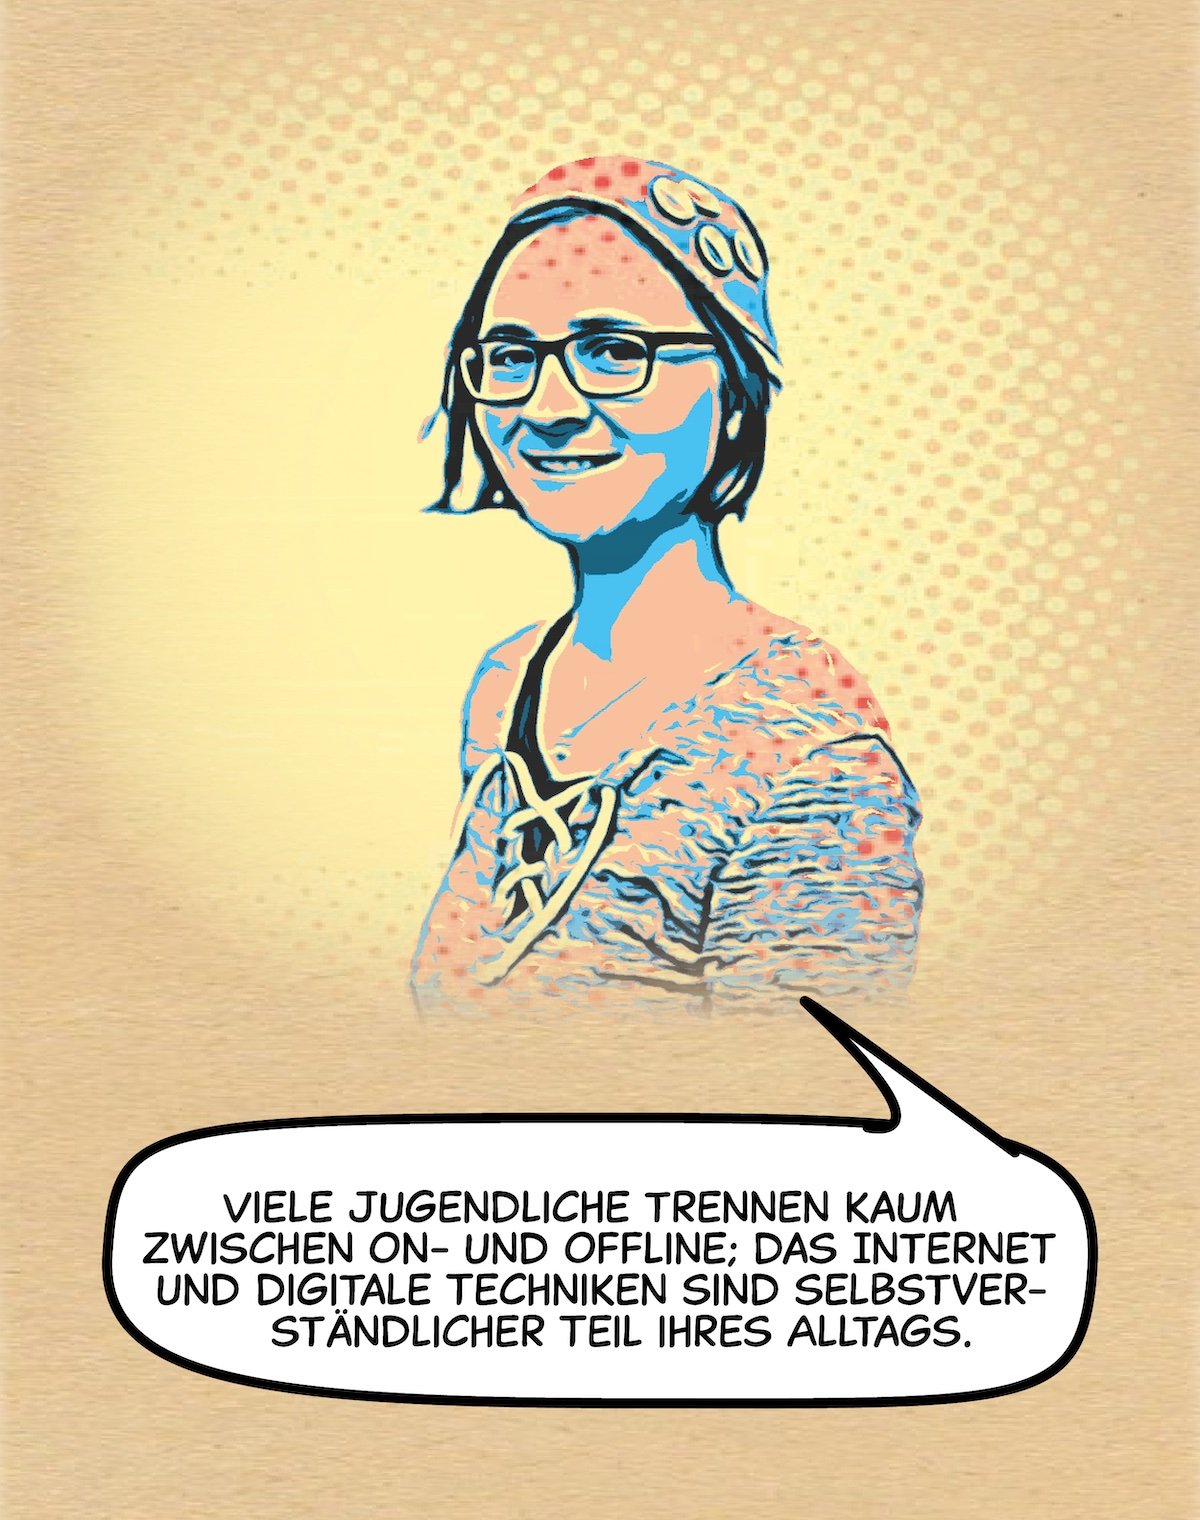 Illustration von Julia Lehnert im Comic-Stil mit Sprechblase